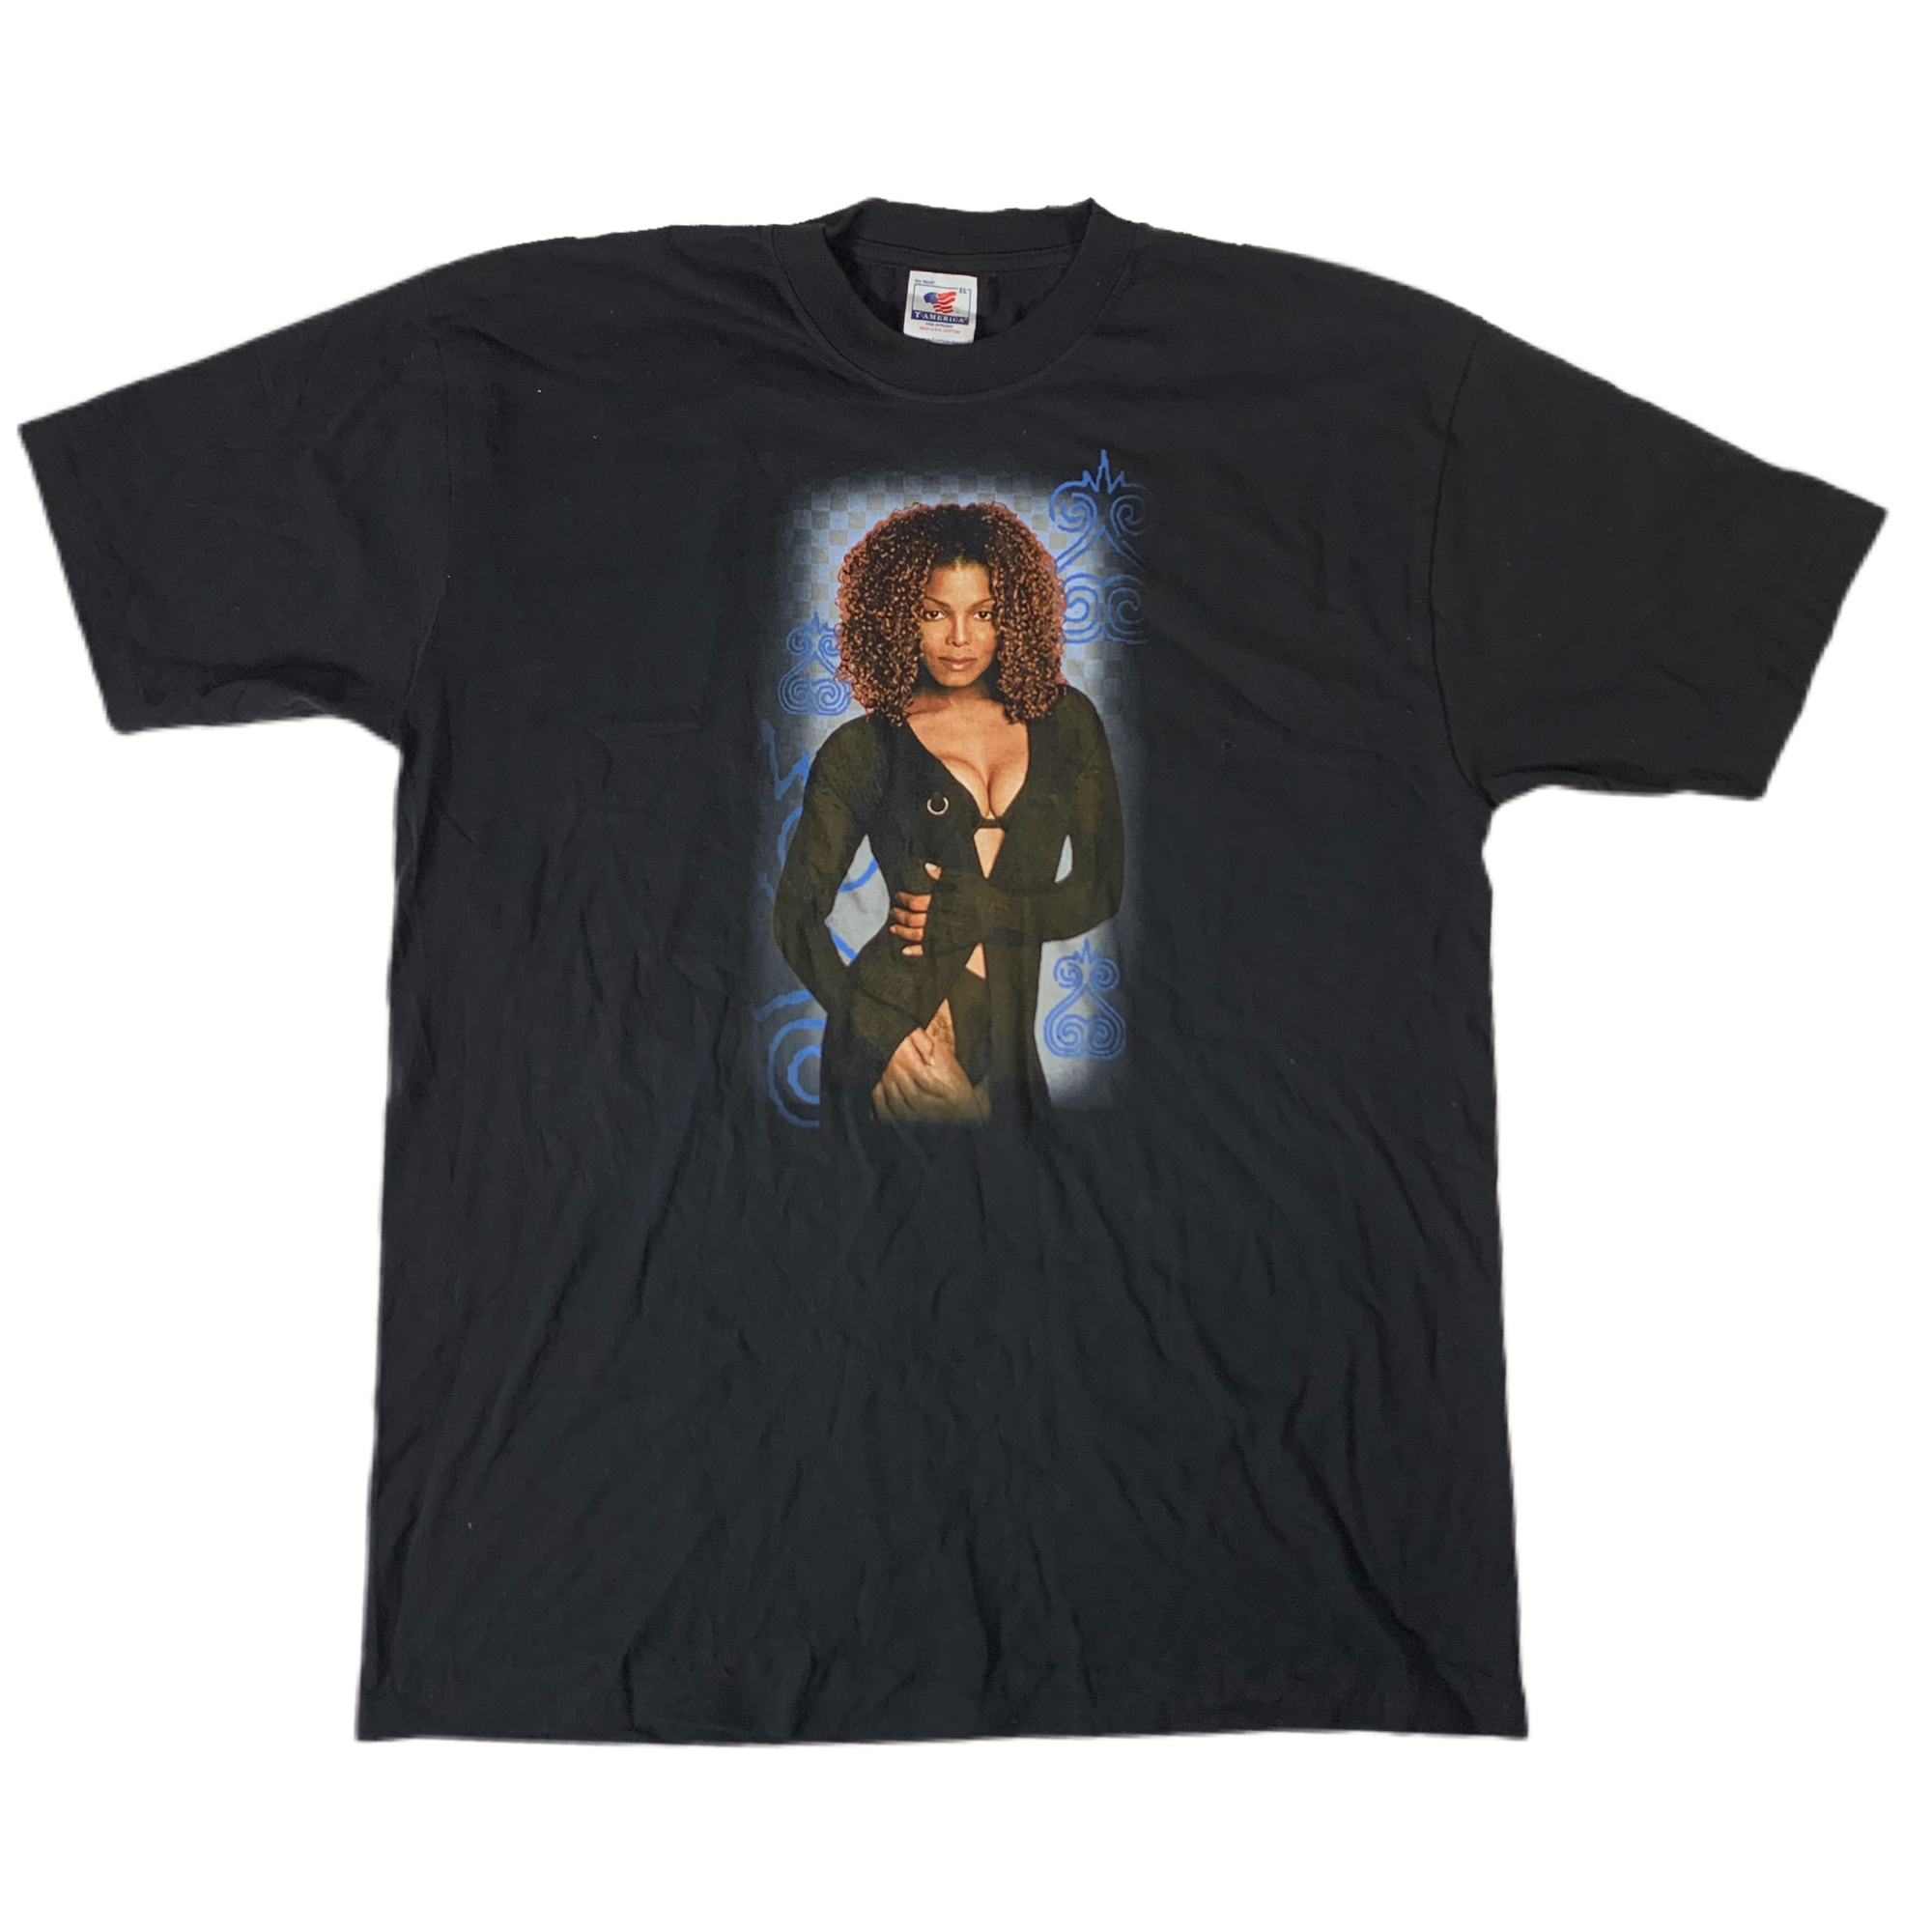 Vintage Janet Jackson "The Velvet Rope" T-Shirt - jointcustodydc